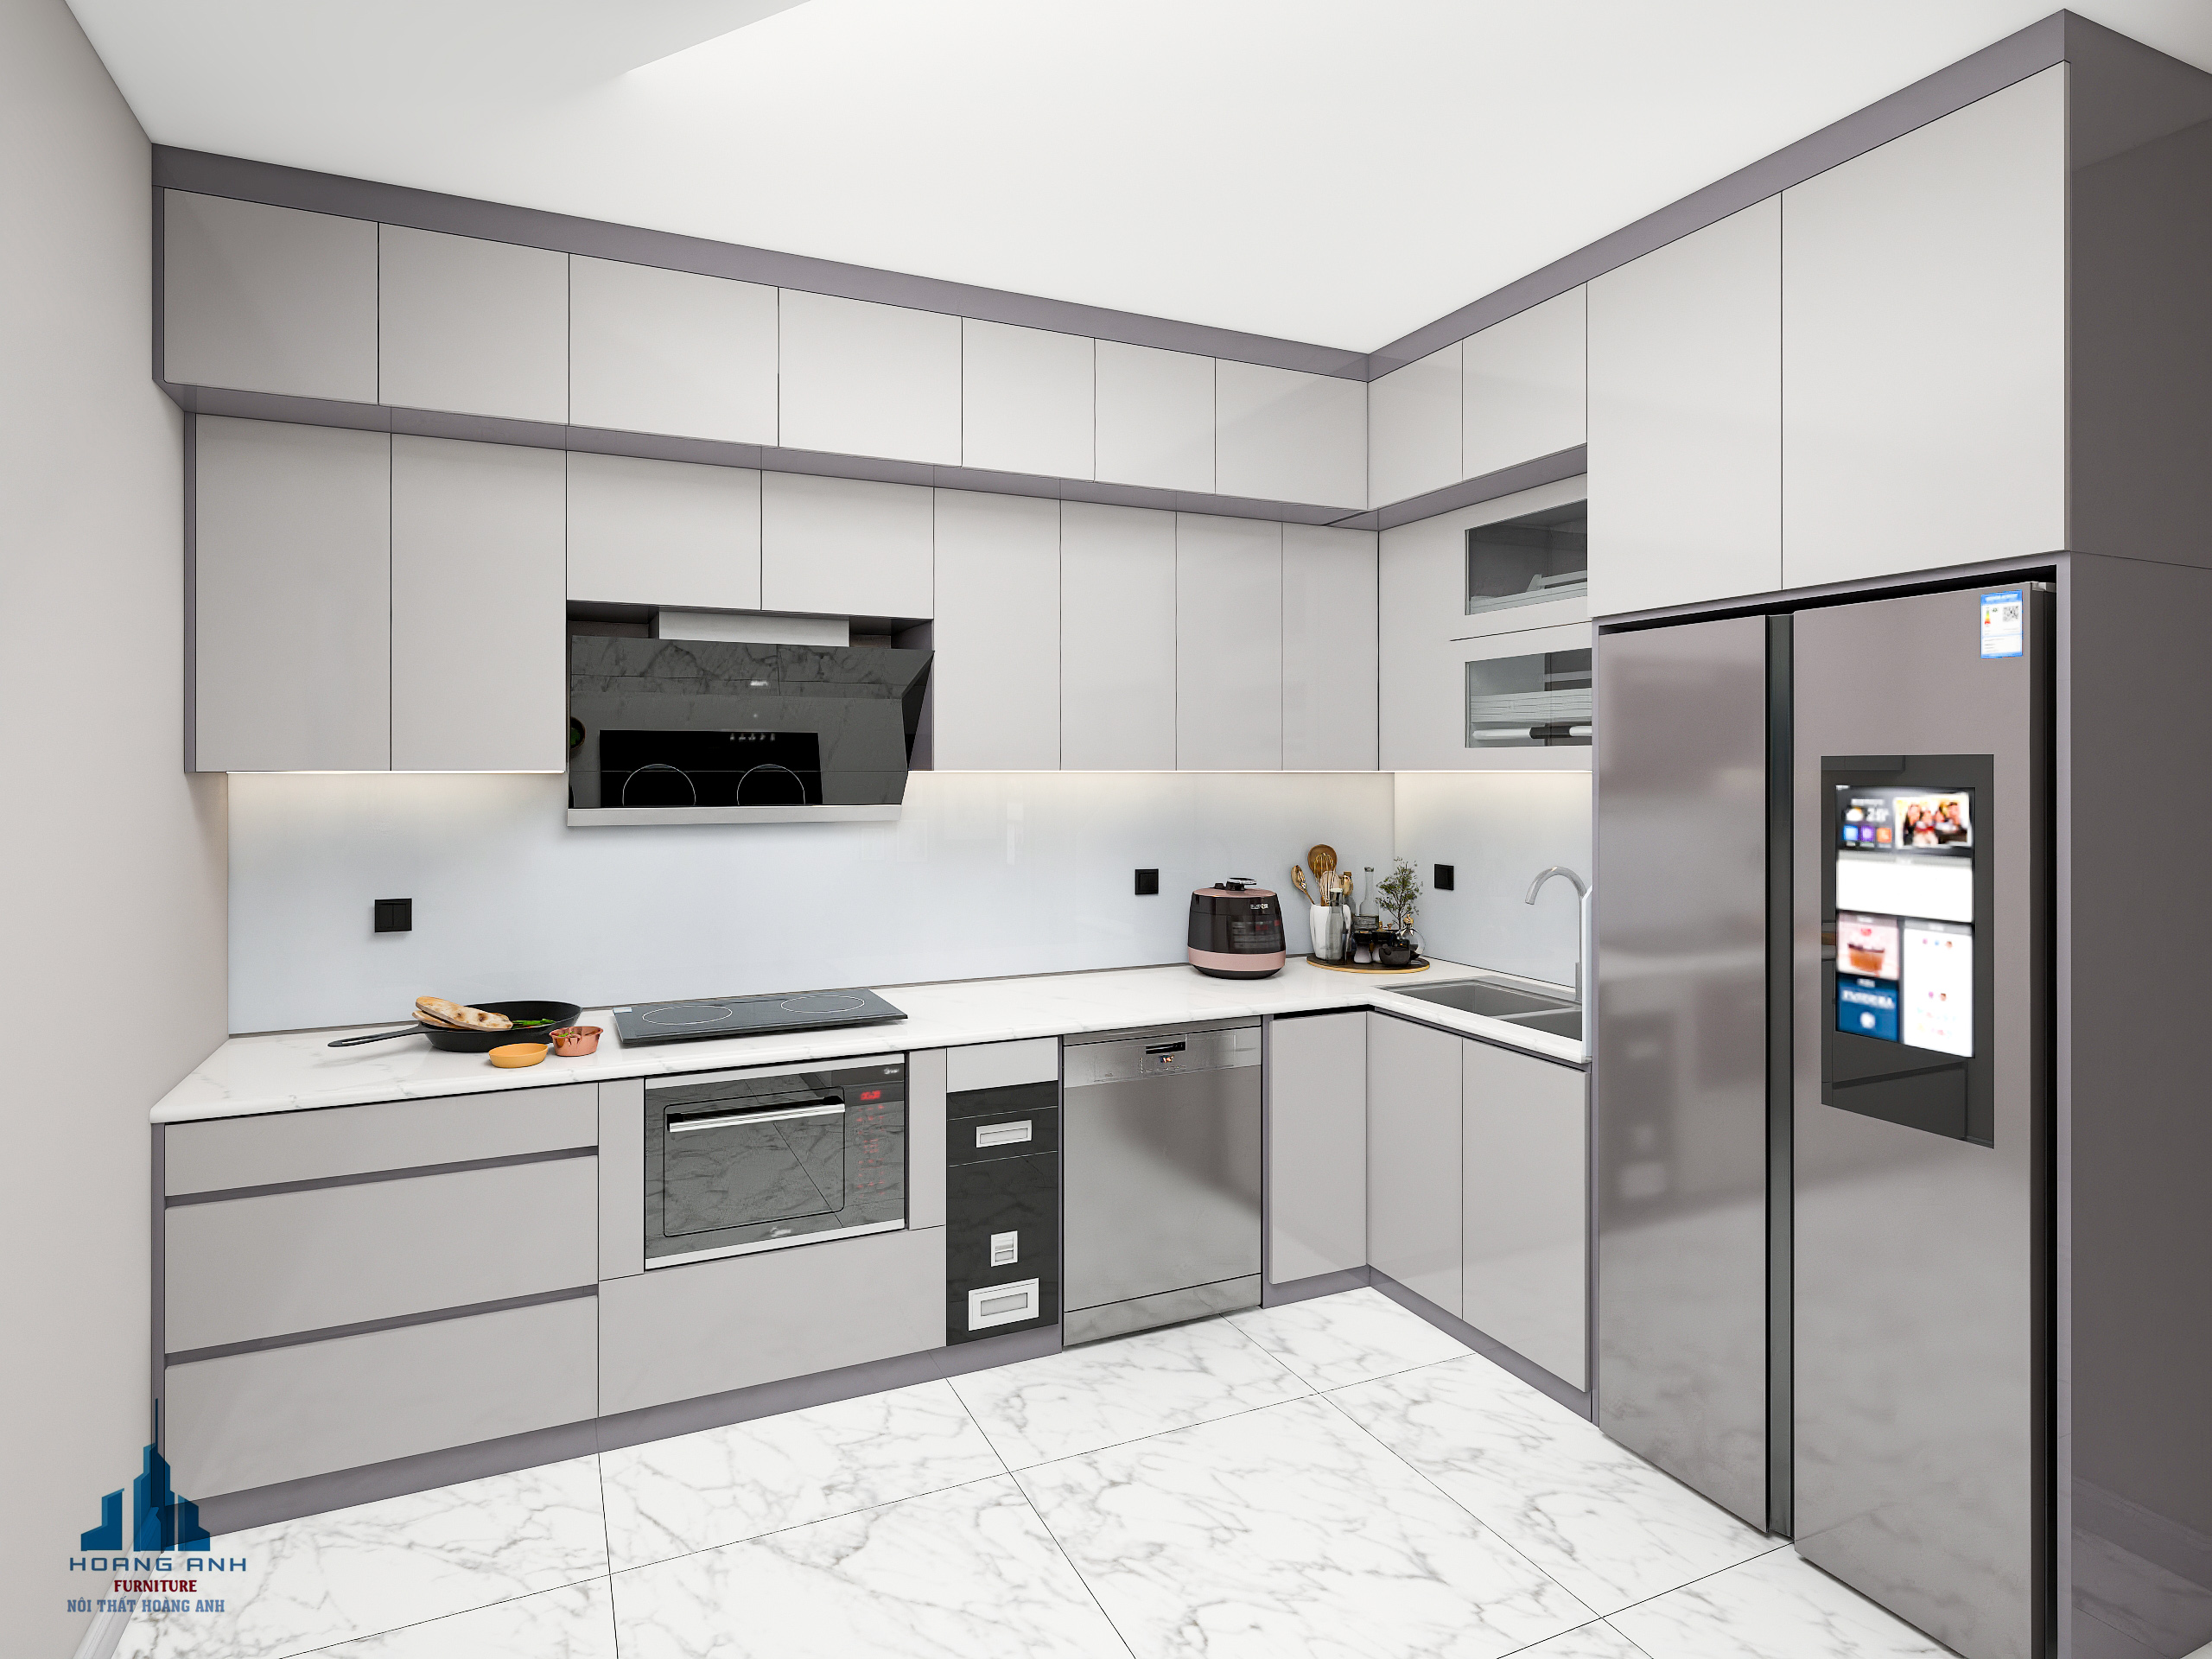 Những lưu ý khi thiết kế thi công tủ bếp để có một căn bếp đẹp, công năng bố trí Khoa học